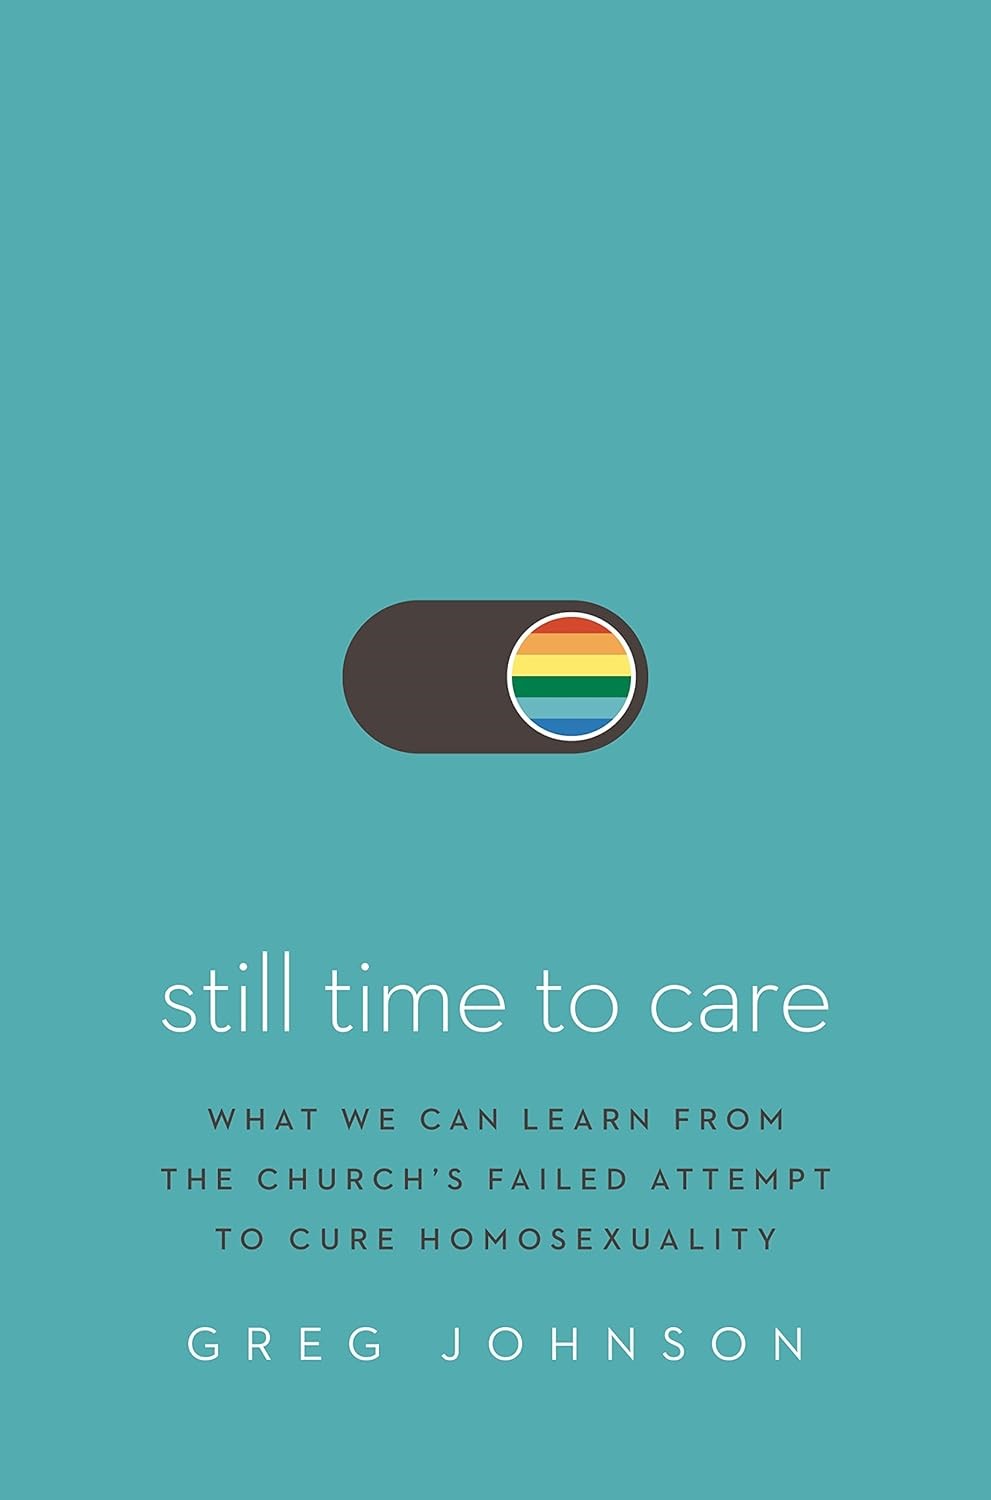 그레그 존슨(Greg Johnson) 목사가 2021년 출간한 책 <still time to care>의 책 표지. 